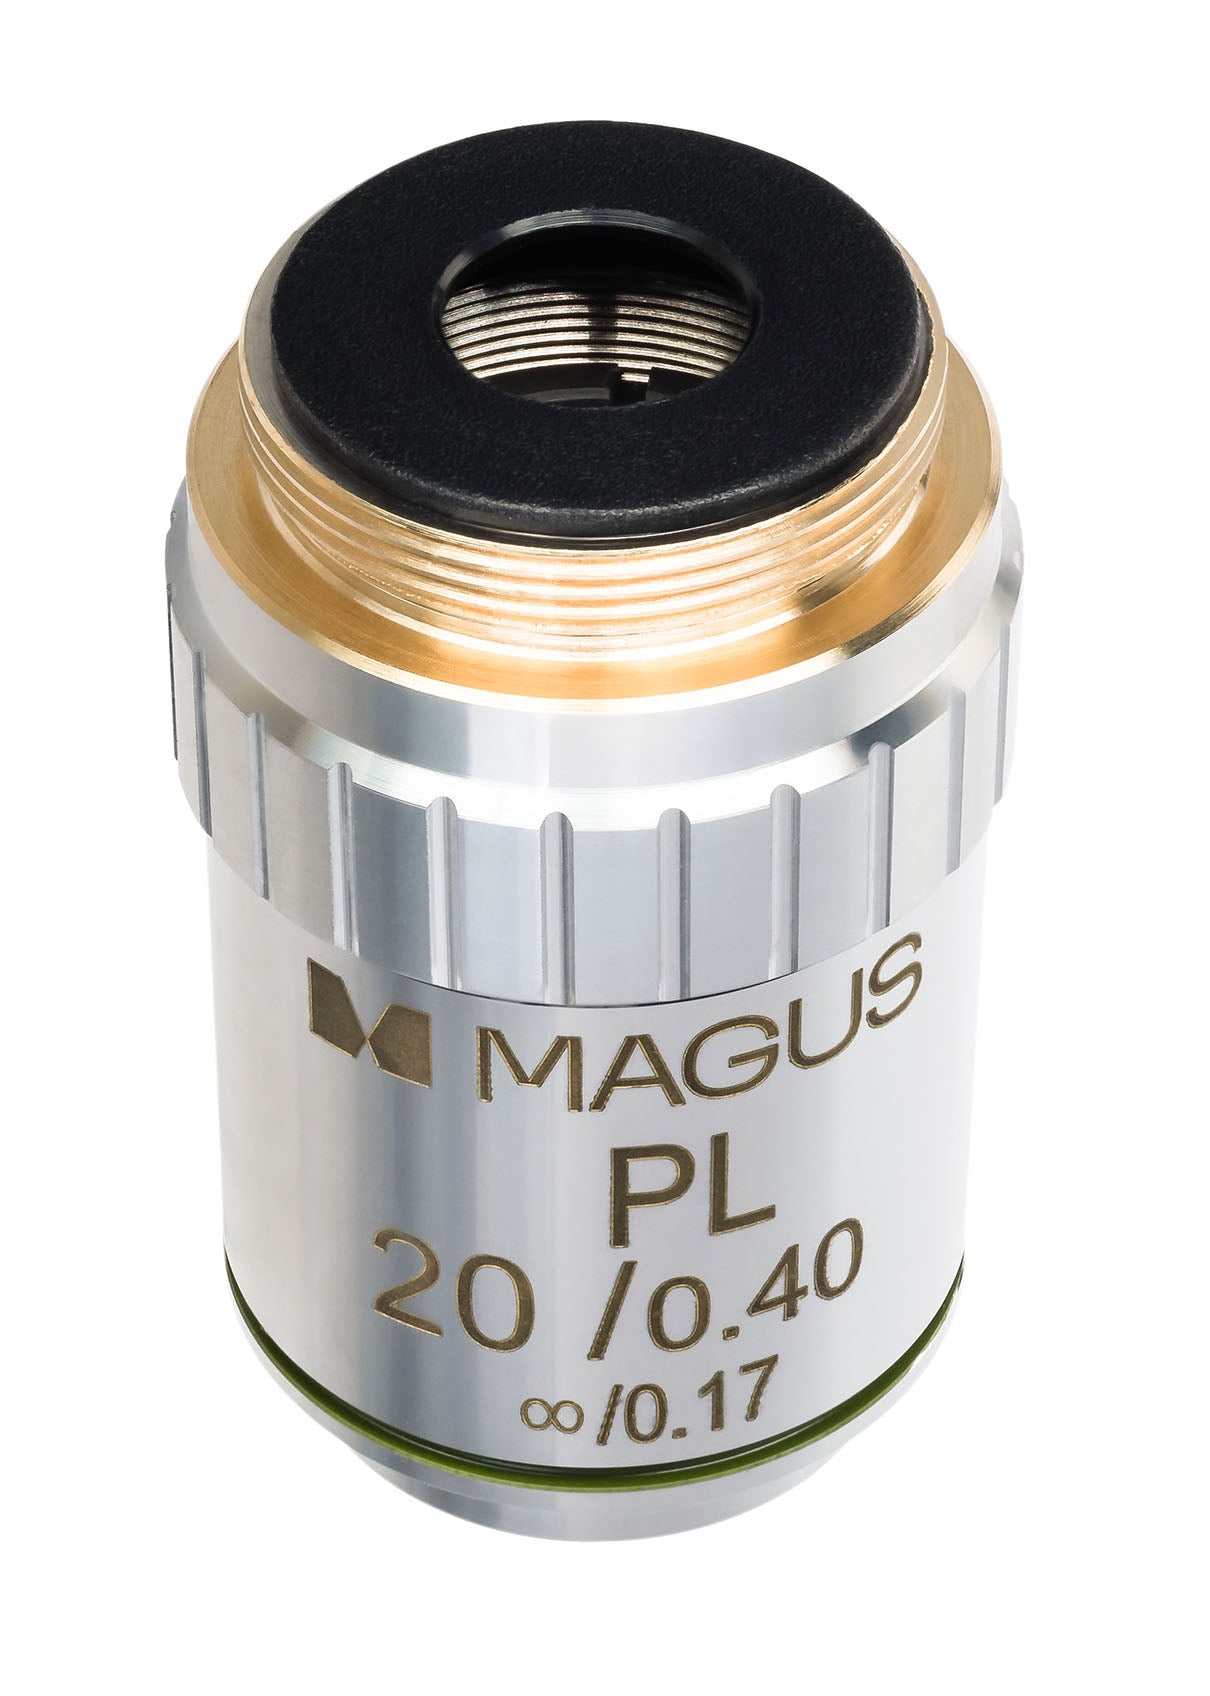 MAGUS MP20 20x/0.40 ∞/0.17 Oneindig Plan Achromatisch Objectief